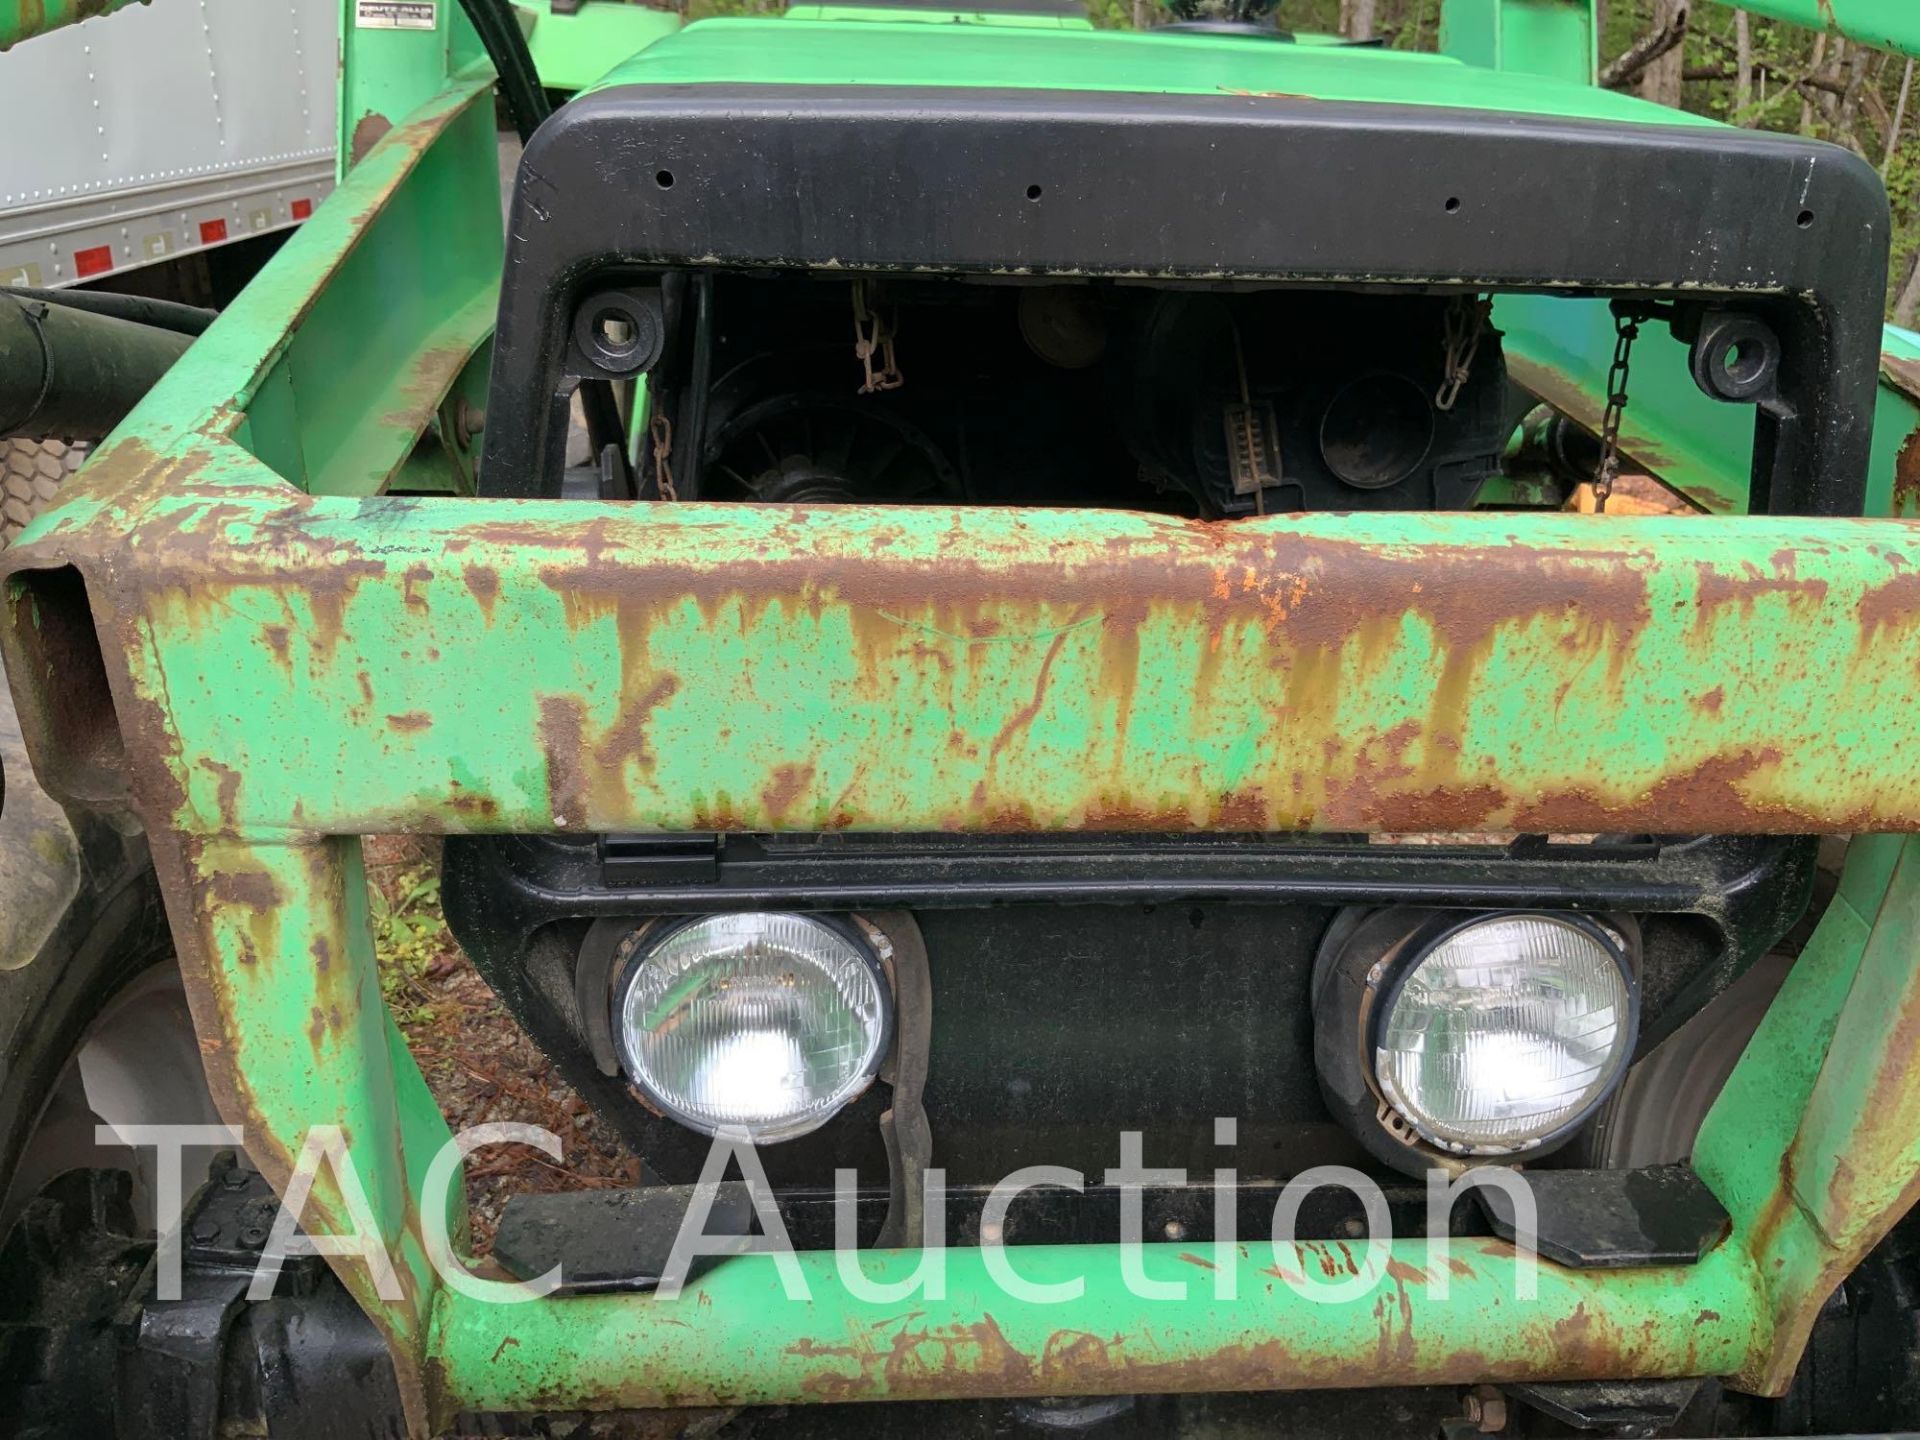 1987 Deutz-Allis Tractor W/ Front End Loader - Image 6 of 25